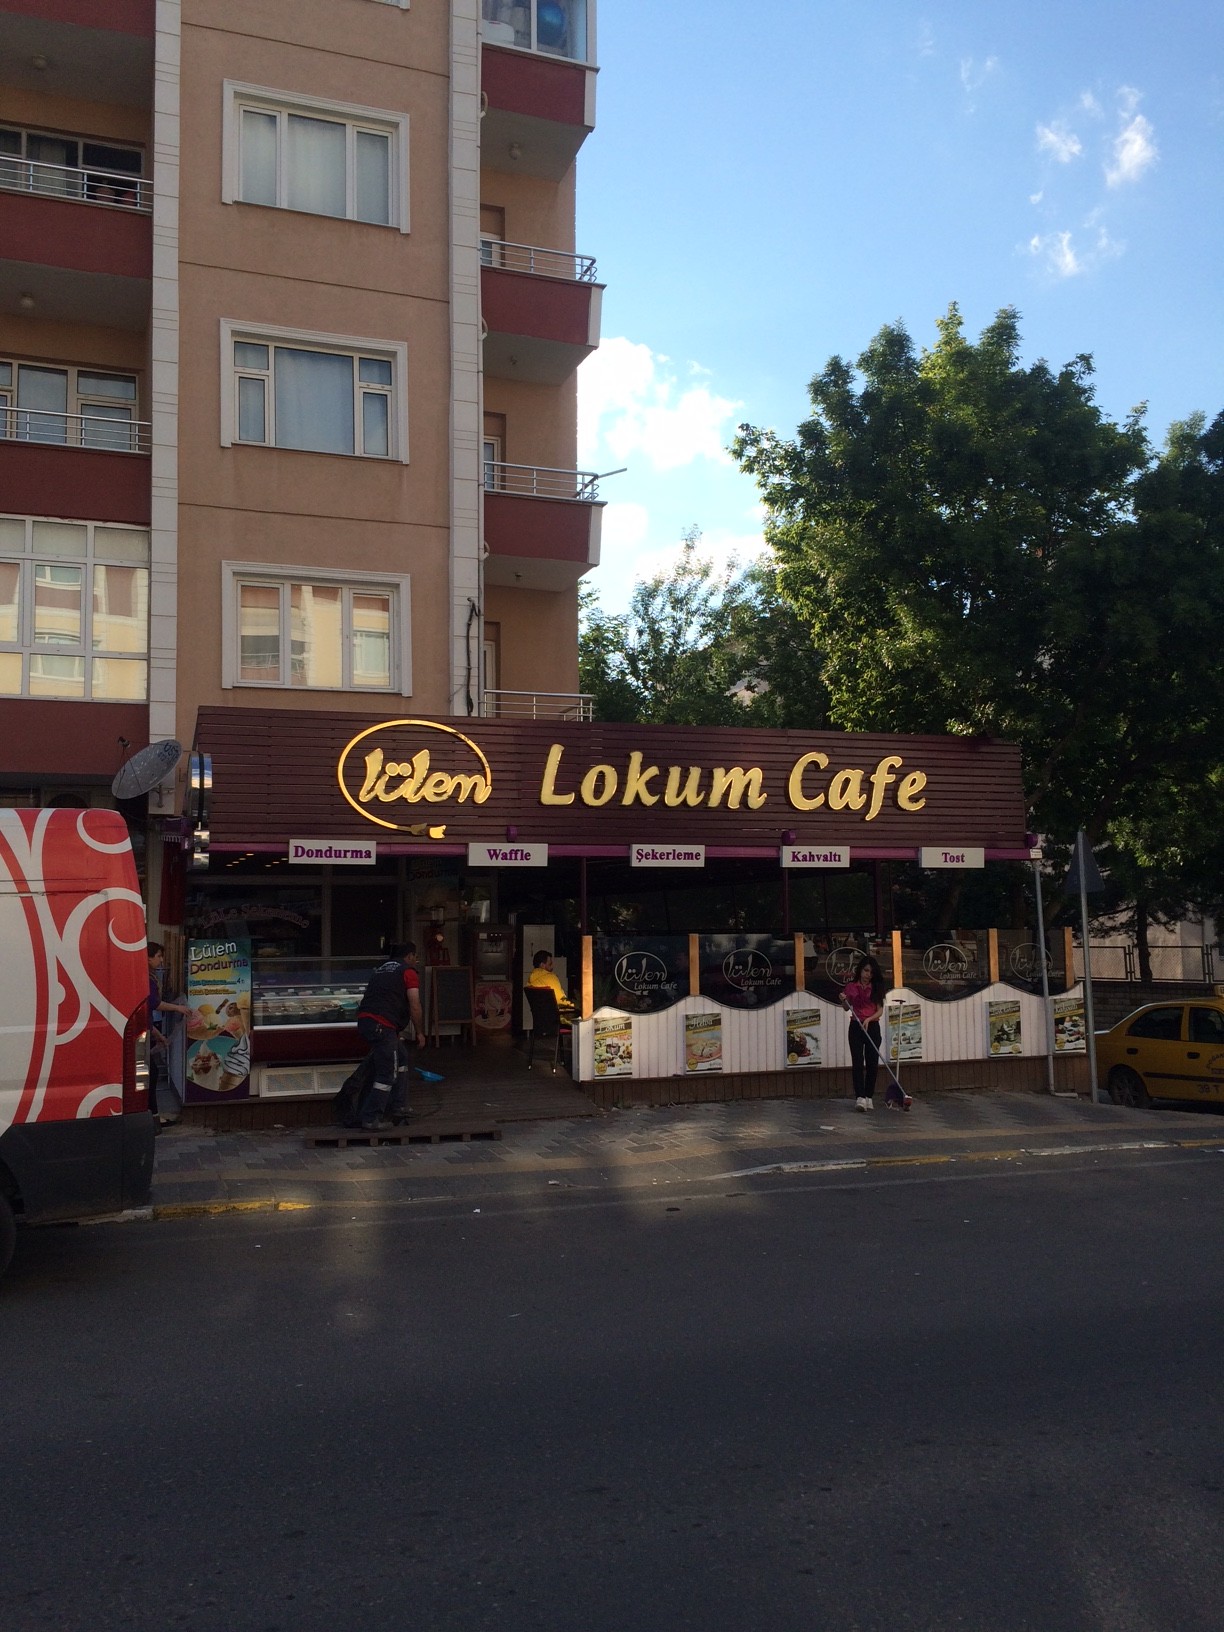 Lülem Lokum Cafe Gold Paslanmaz Kutu Harf Montajını Tamamladık